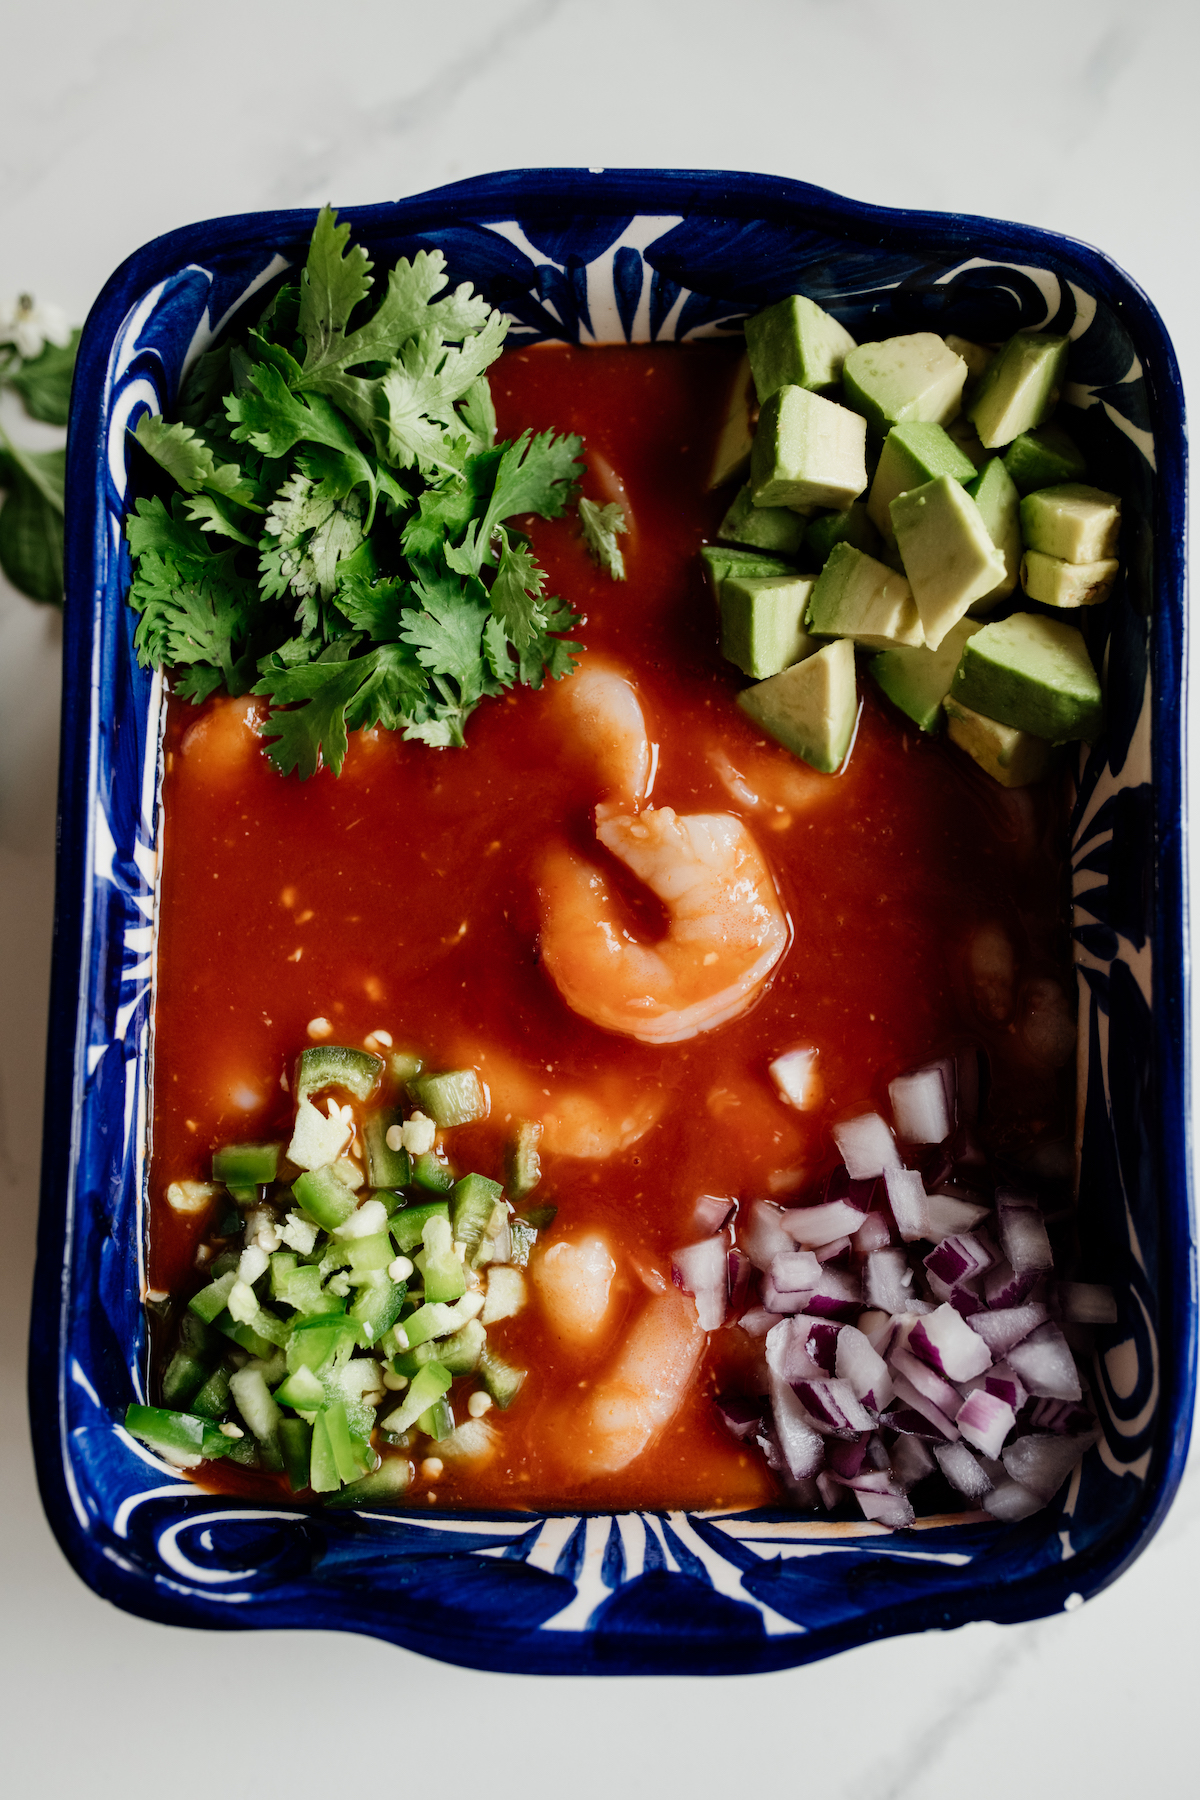 todos los ingredientes para hacer un coctel de camarones mexicano se agregan a un plato rectangular azul para servir antes de mezclarlos.